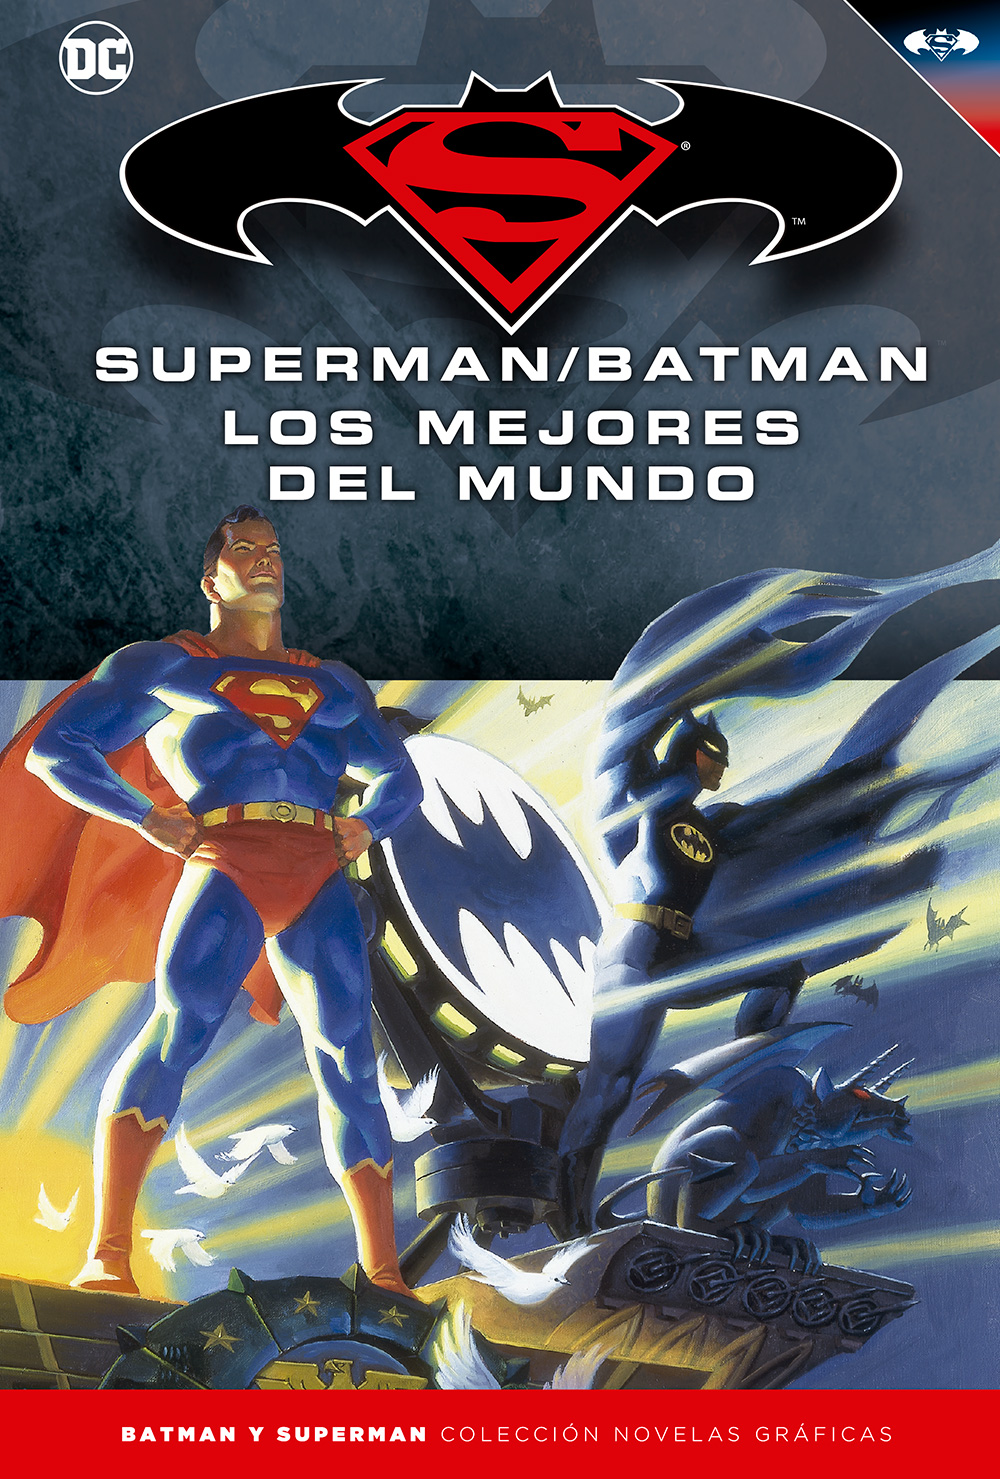 44 - [DC - Salvat] Batman y Superman: Colección Novelas Gráficas - Página 7 Portada_BMSM_16_LosMejoresdelMundo